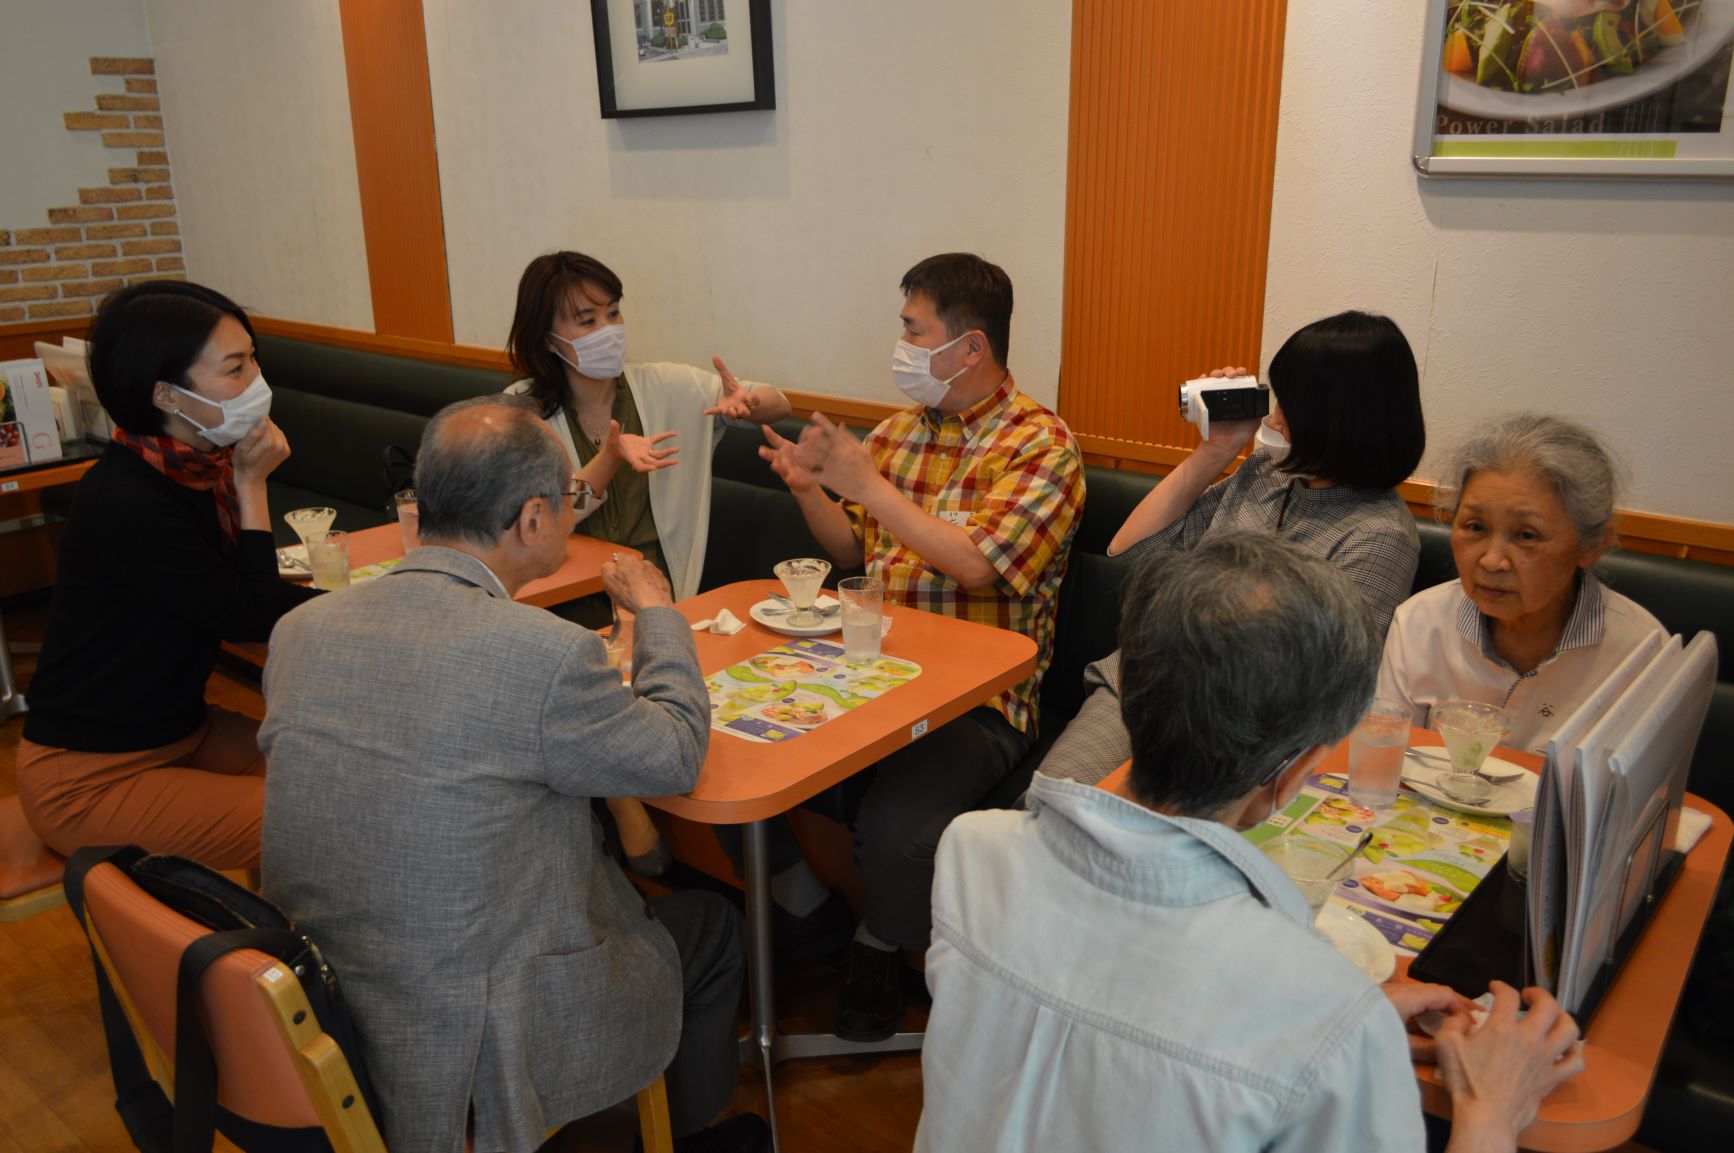 岩田裕之さん（写真左から４番目）、当事者の男性（写真左から２番目）ファミレスで実施された「認知症本人ミーティング」